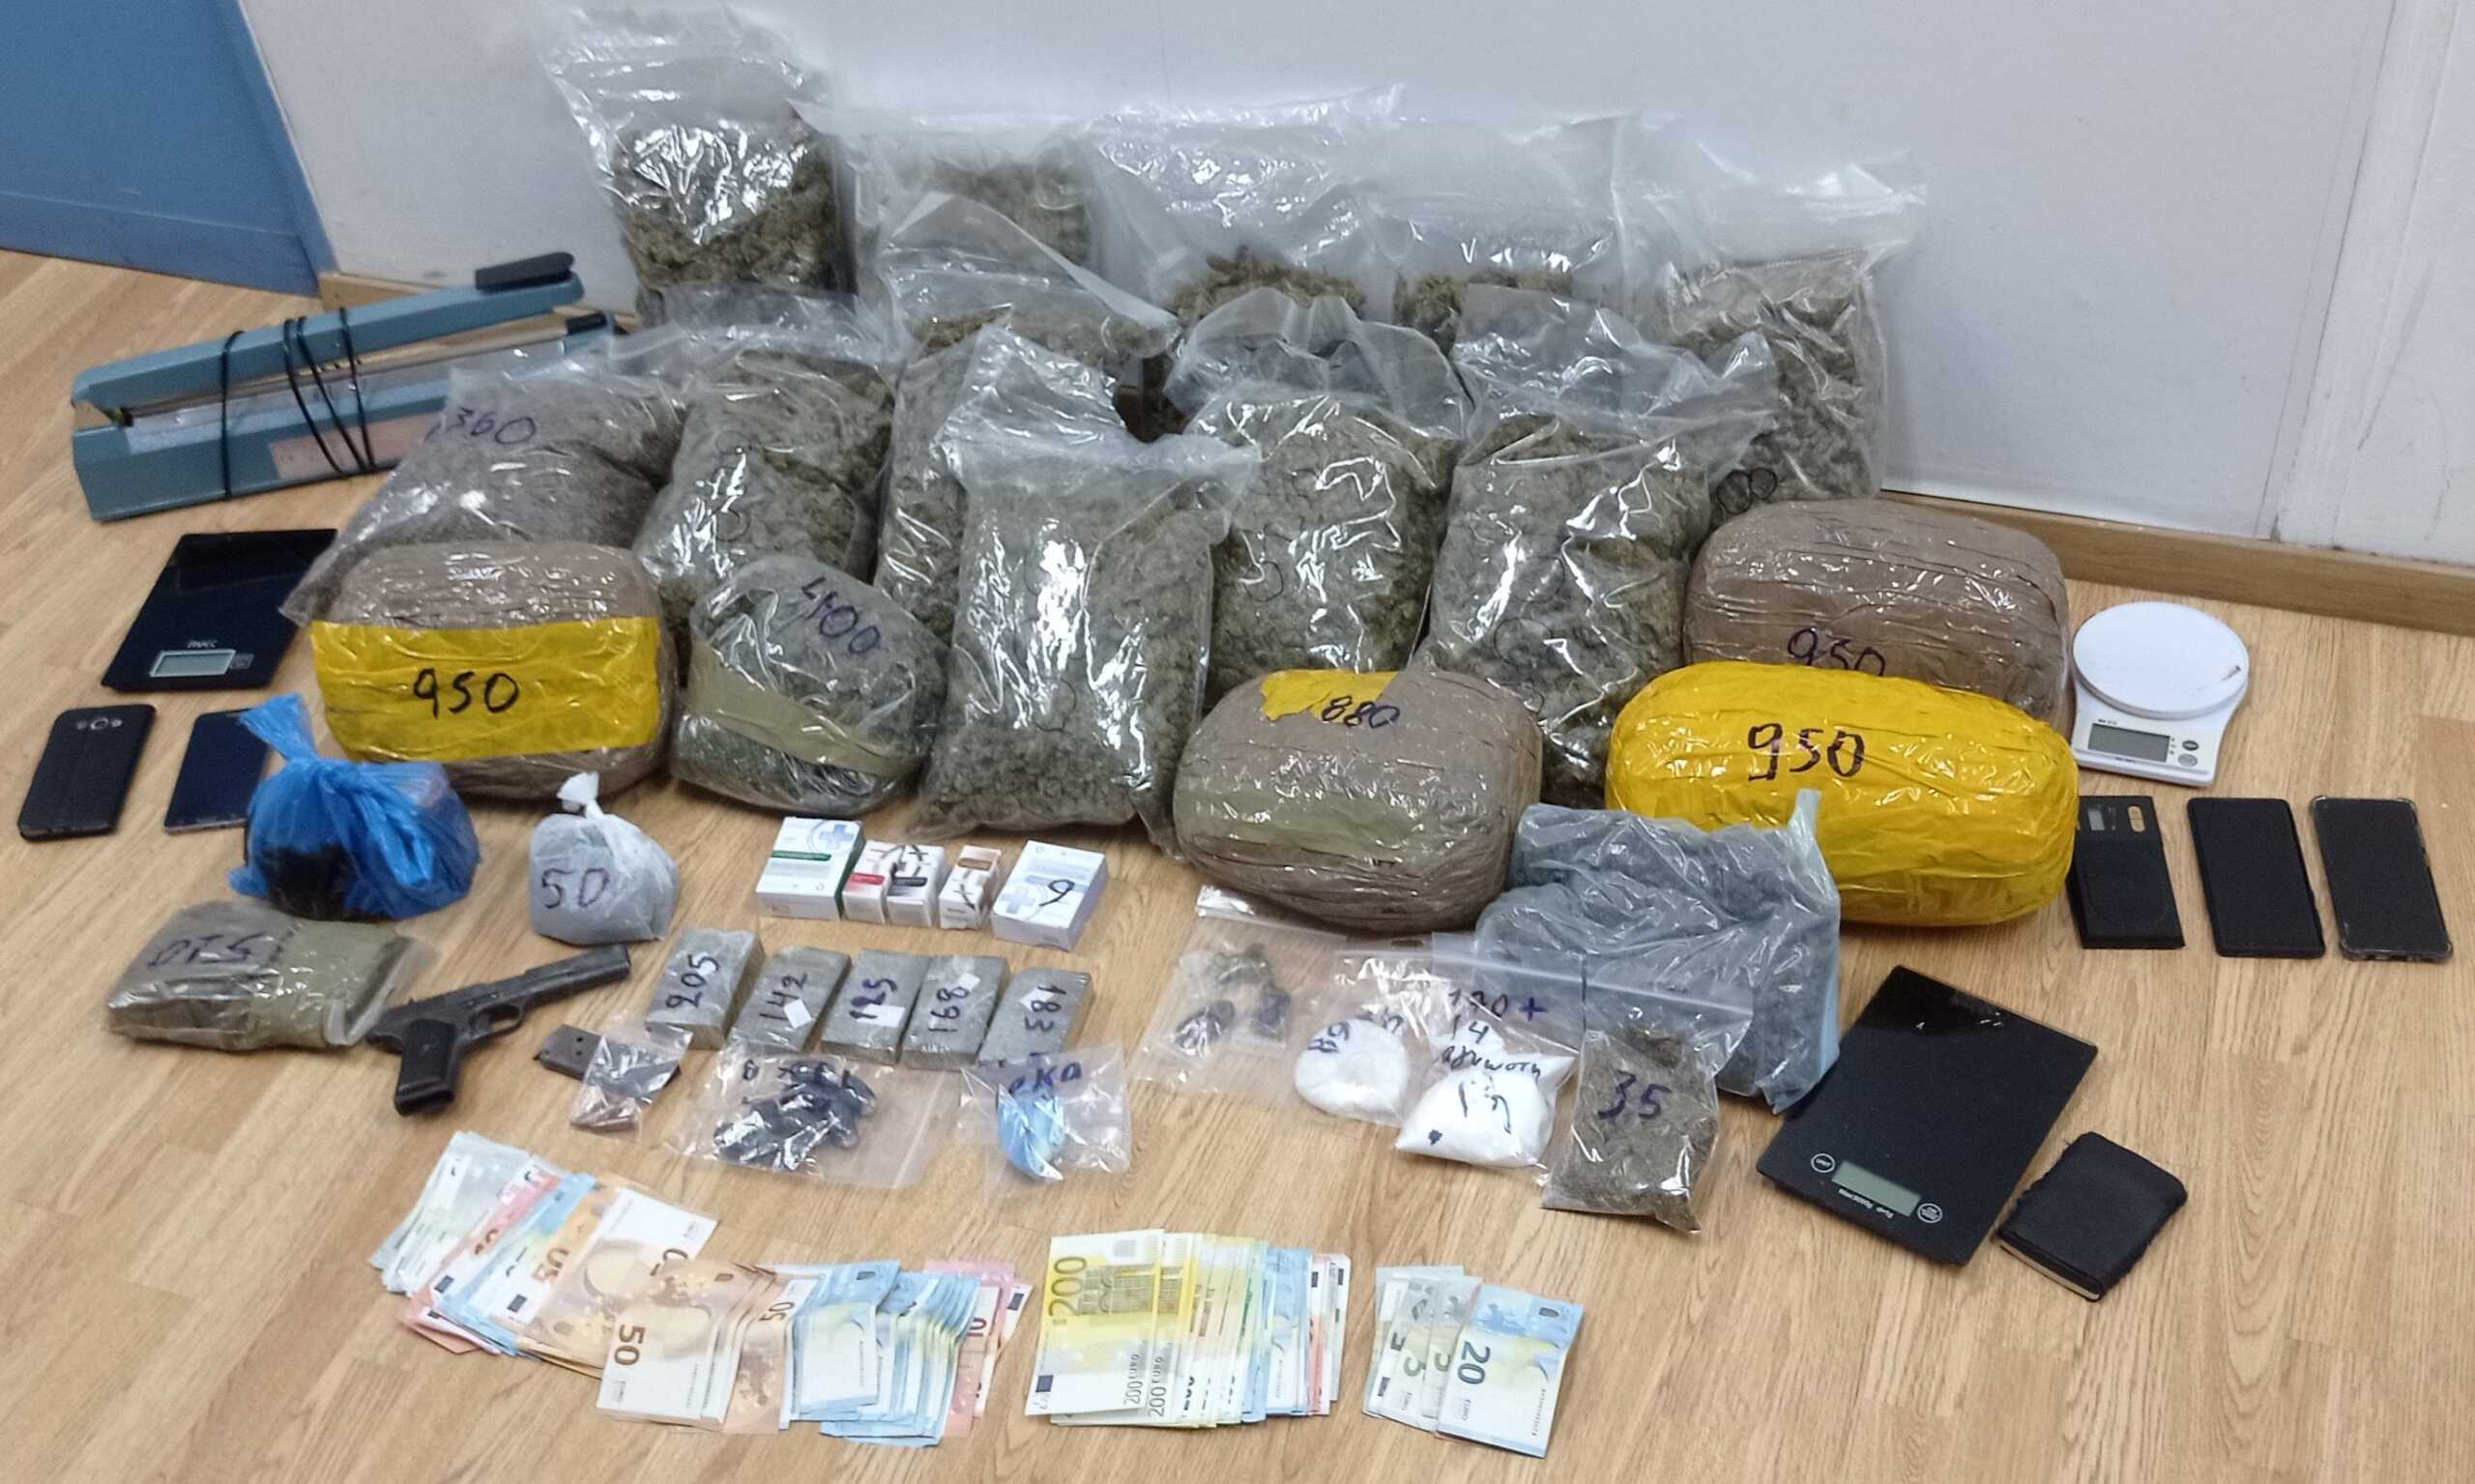 Έμποροι ναρκωτικών συνελήφθησαν στο κέντρο της Αθήνας – Κατασχέθηκαν πάνω από 7 κιλά κάνναβης και κοκαΐνης